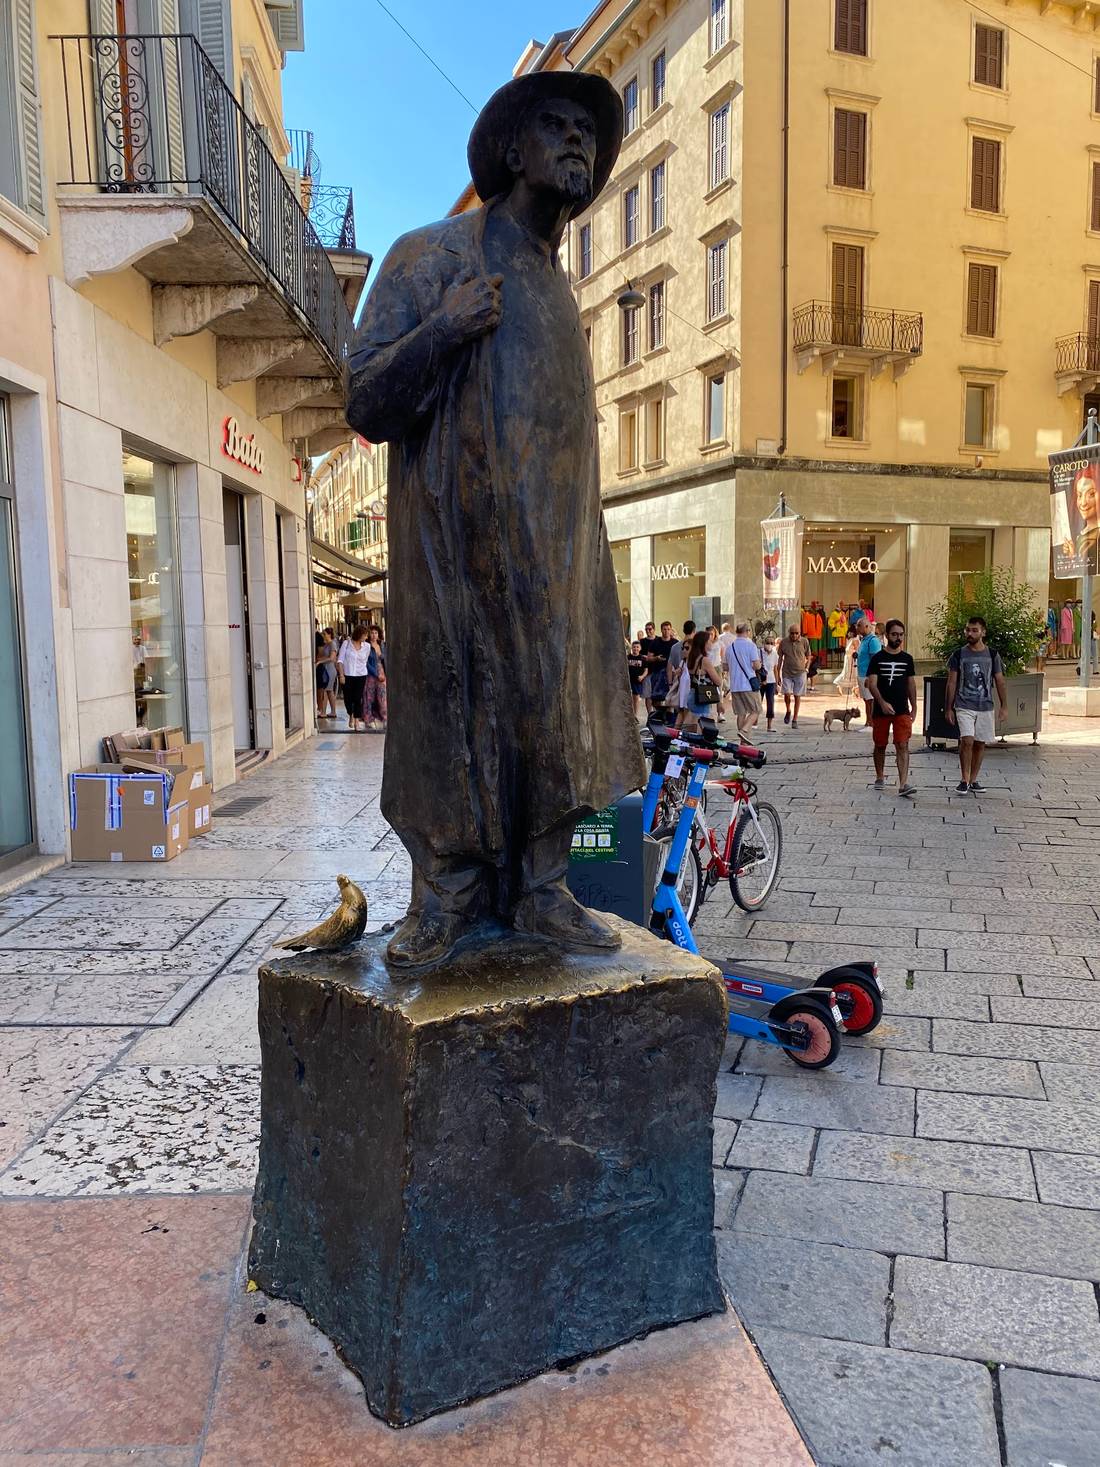 Statue of Berto Barbarani in Piazza delle Erbe